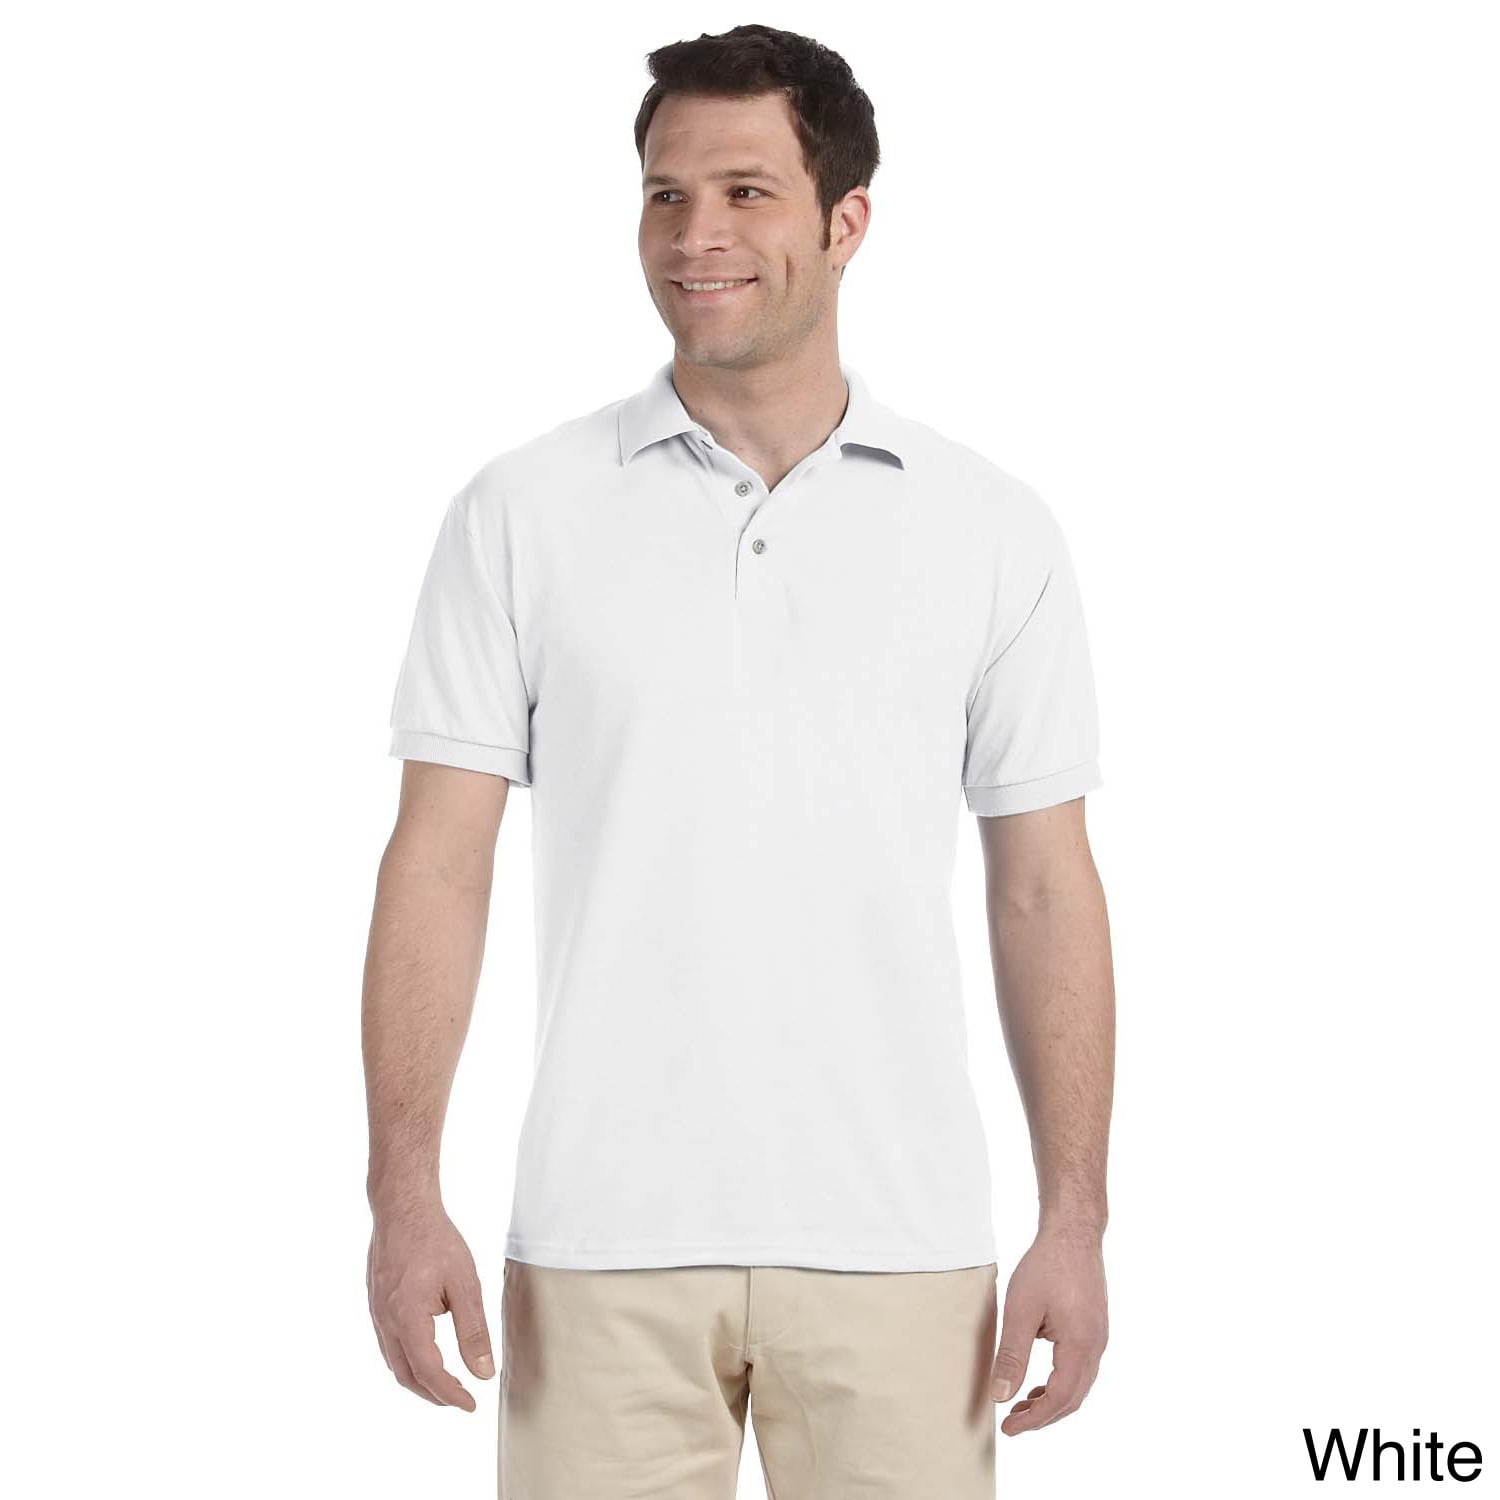 Jerzees Mens Heavyweight Blend Jersey Polo Shirt White Size XXL